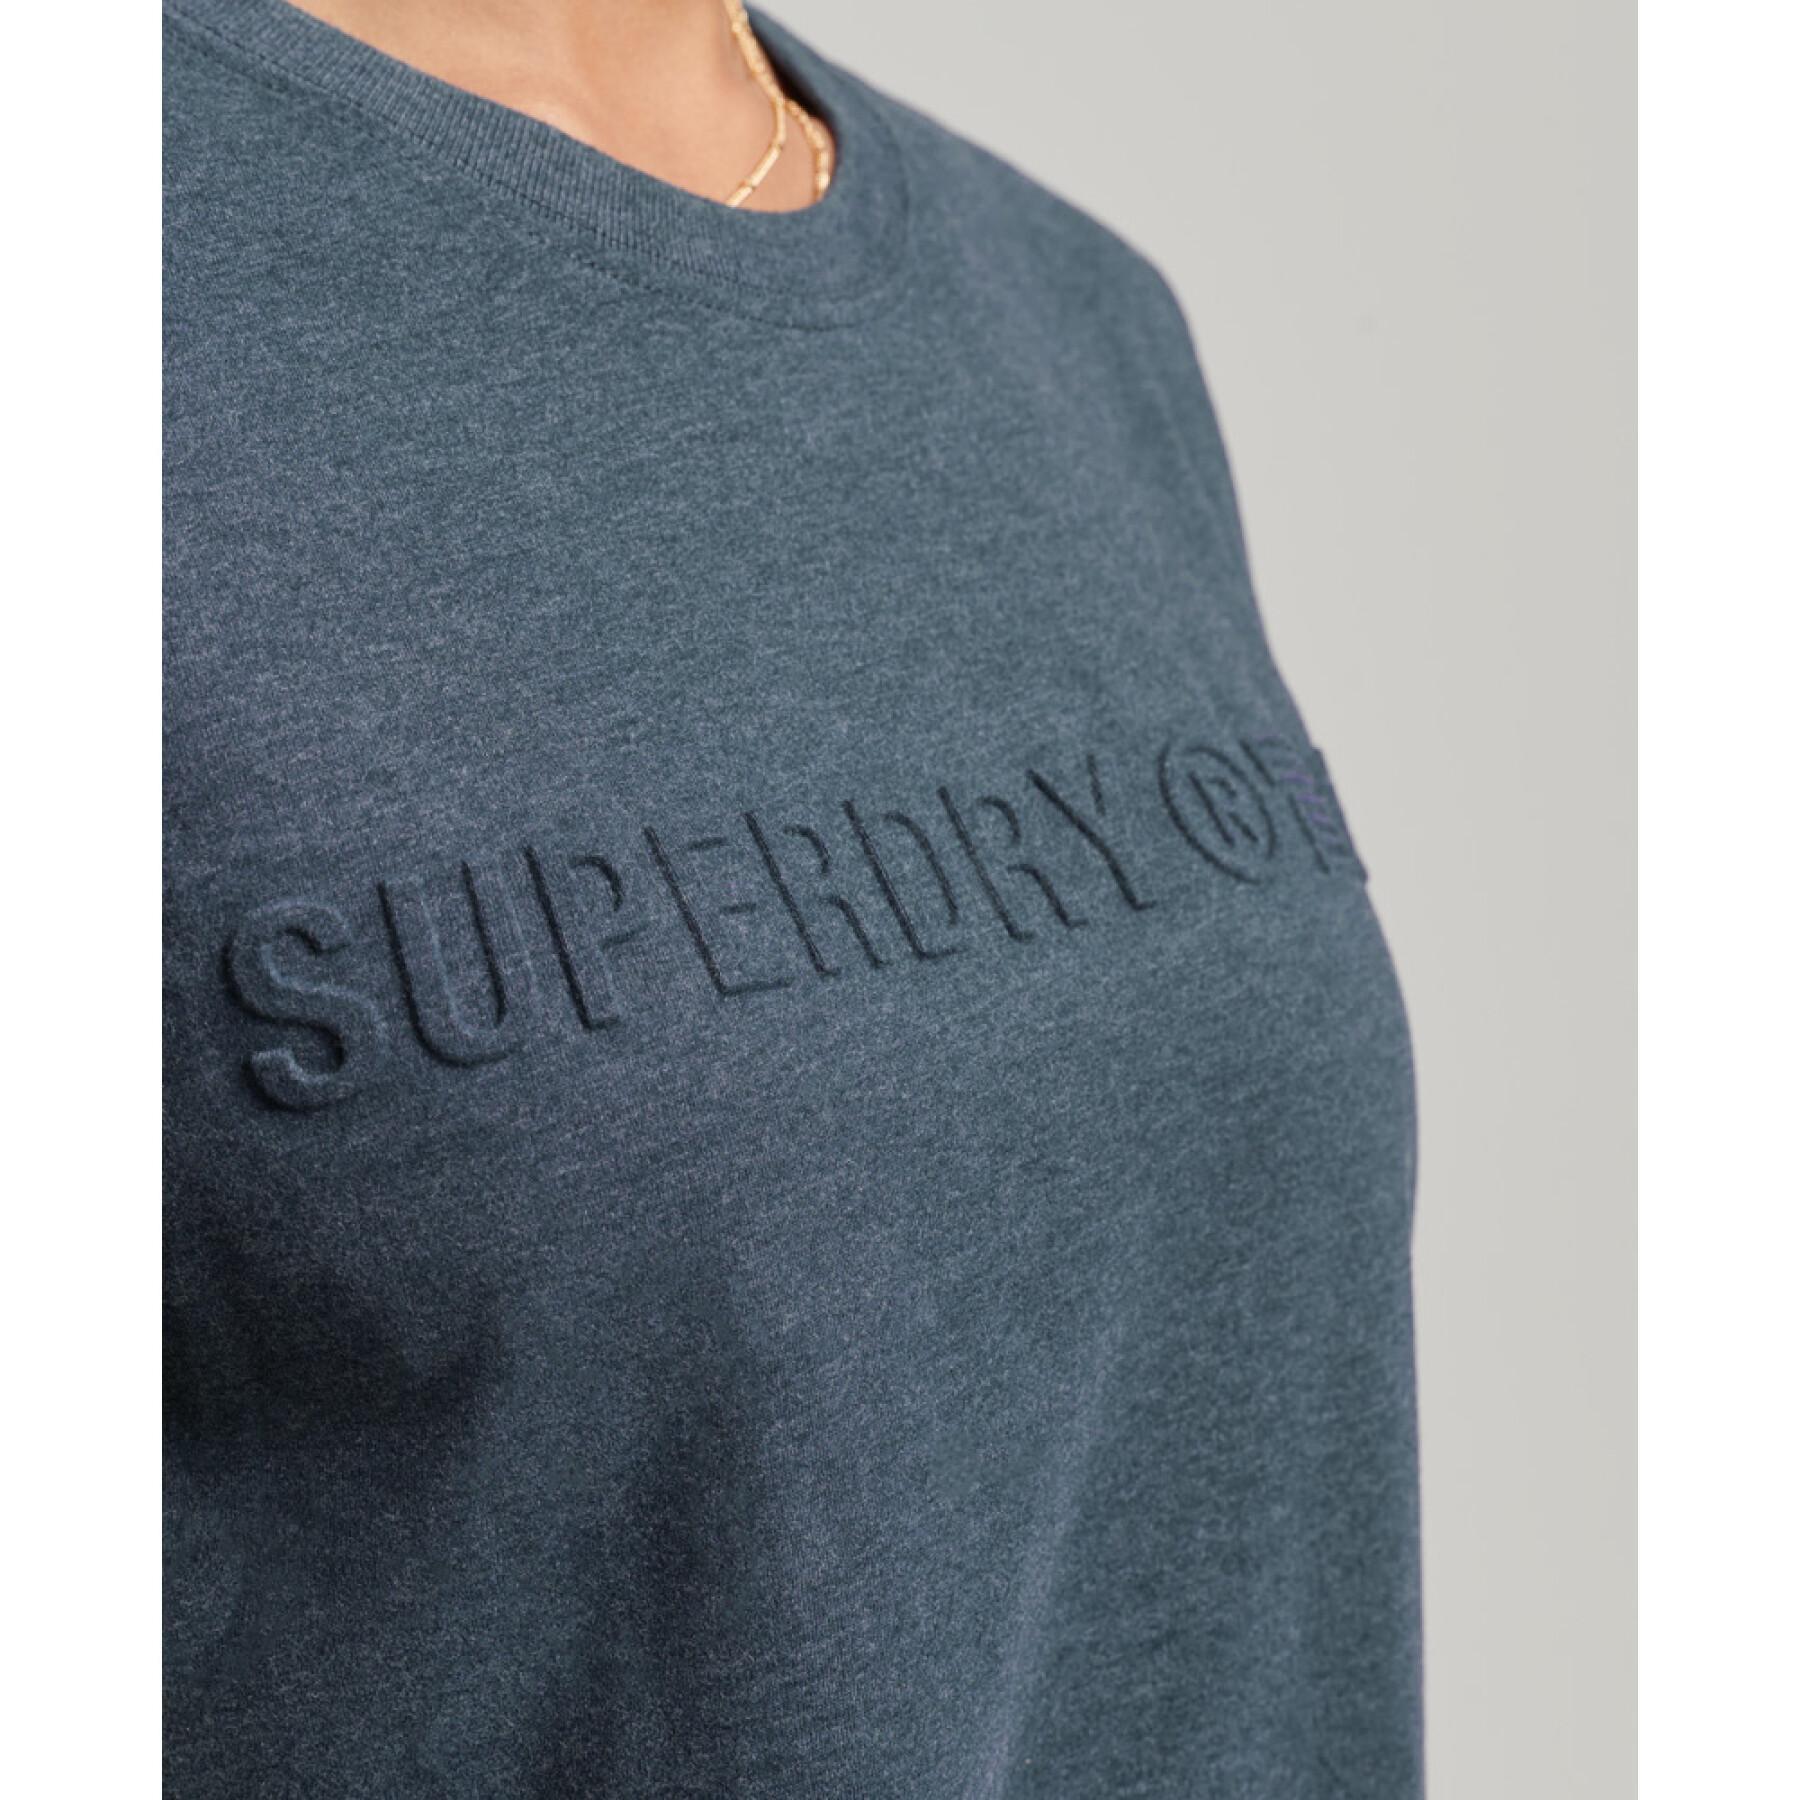 Gevlekt meisjes-T-shirt Superdry Vintage Logo Corporate